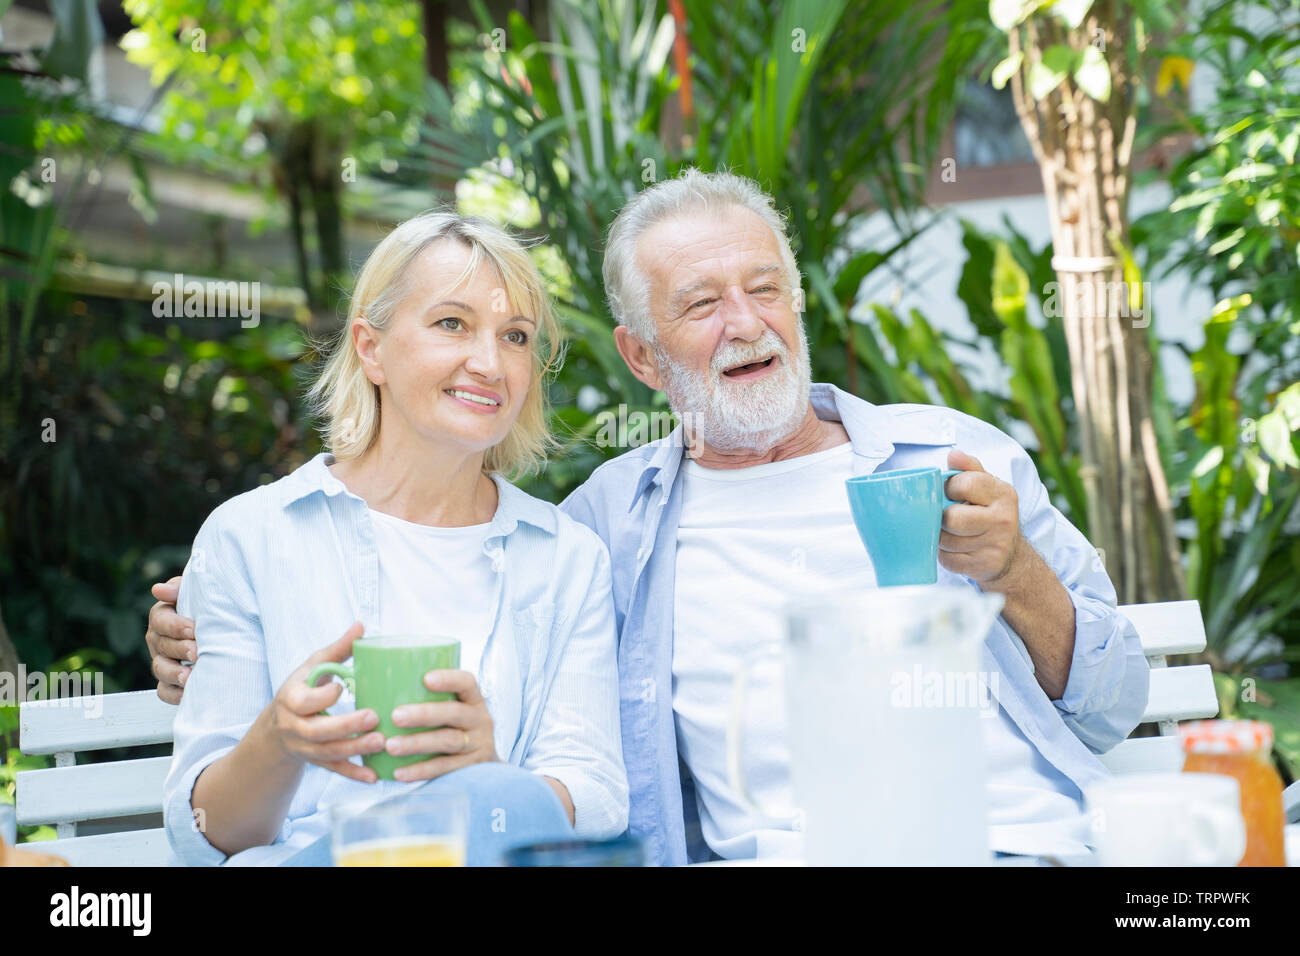 Glückliche Momente. Freudige schön Rentenalter paar Kaffee und Lachen, während ihre Zeit zusammen genießen - Bild Stockfoto